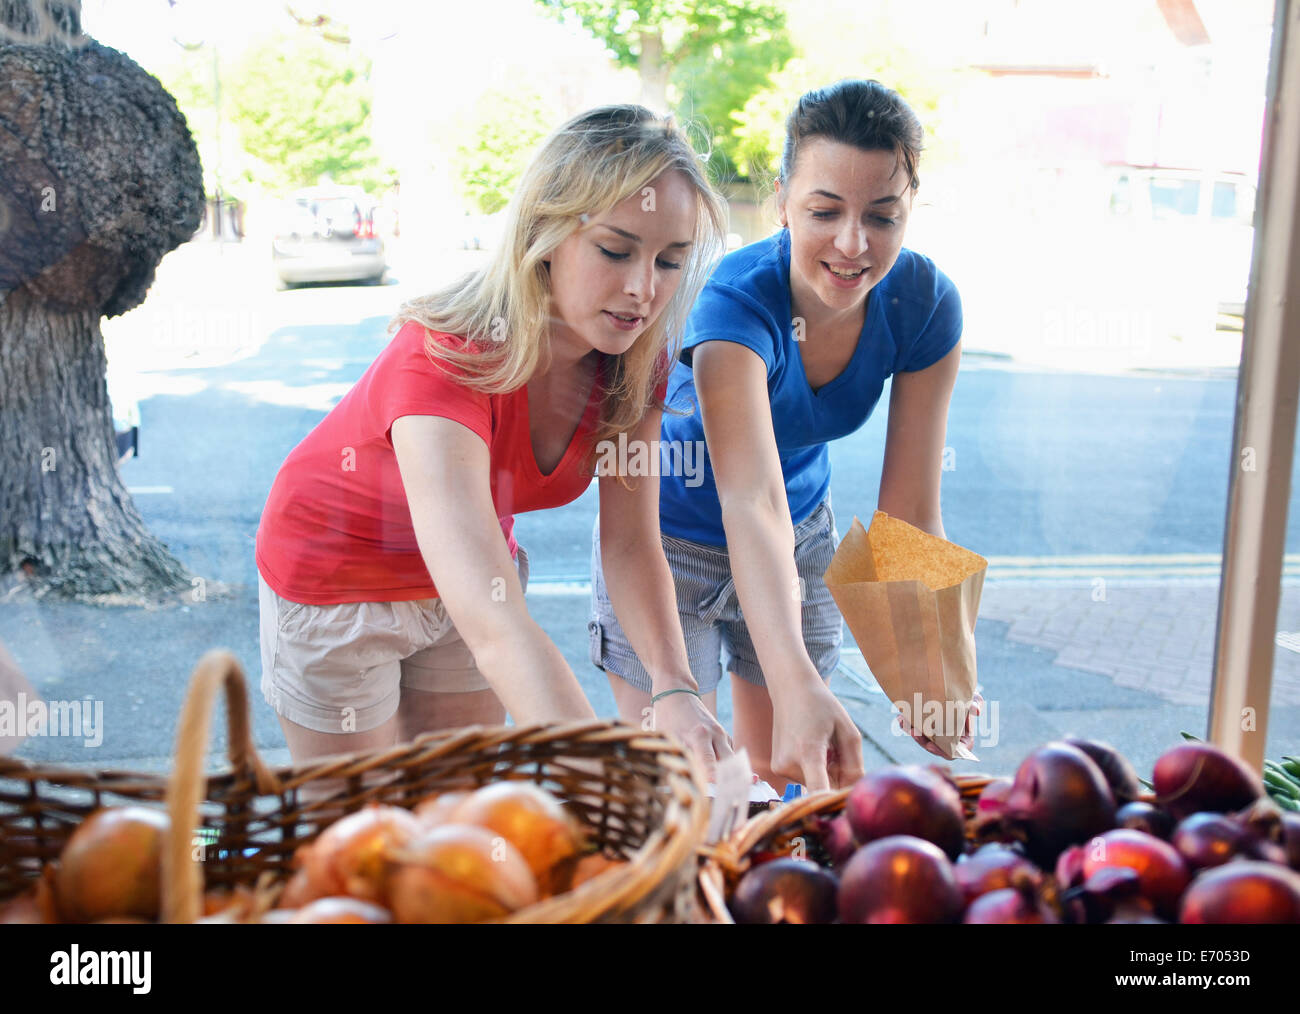 Deux jeunes femmes choisissent des aliments at market stall Banque D'Images